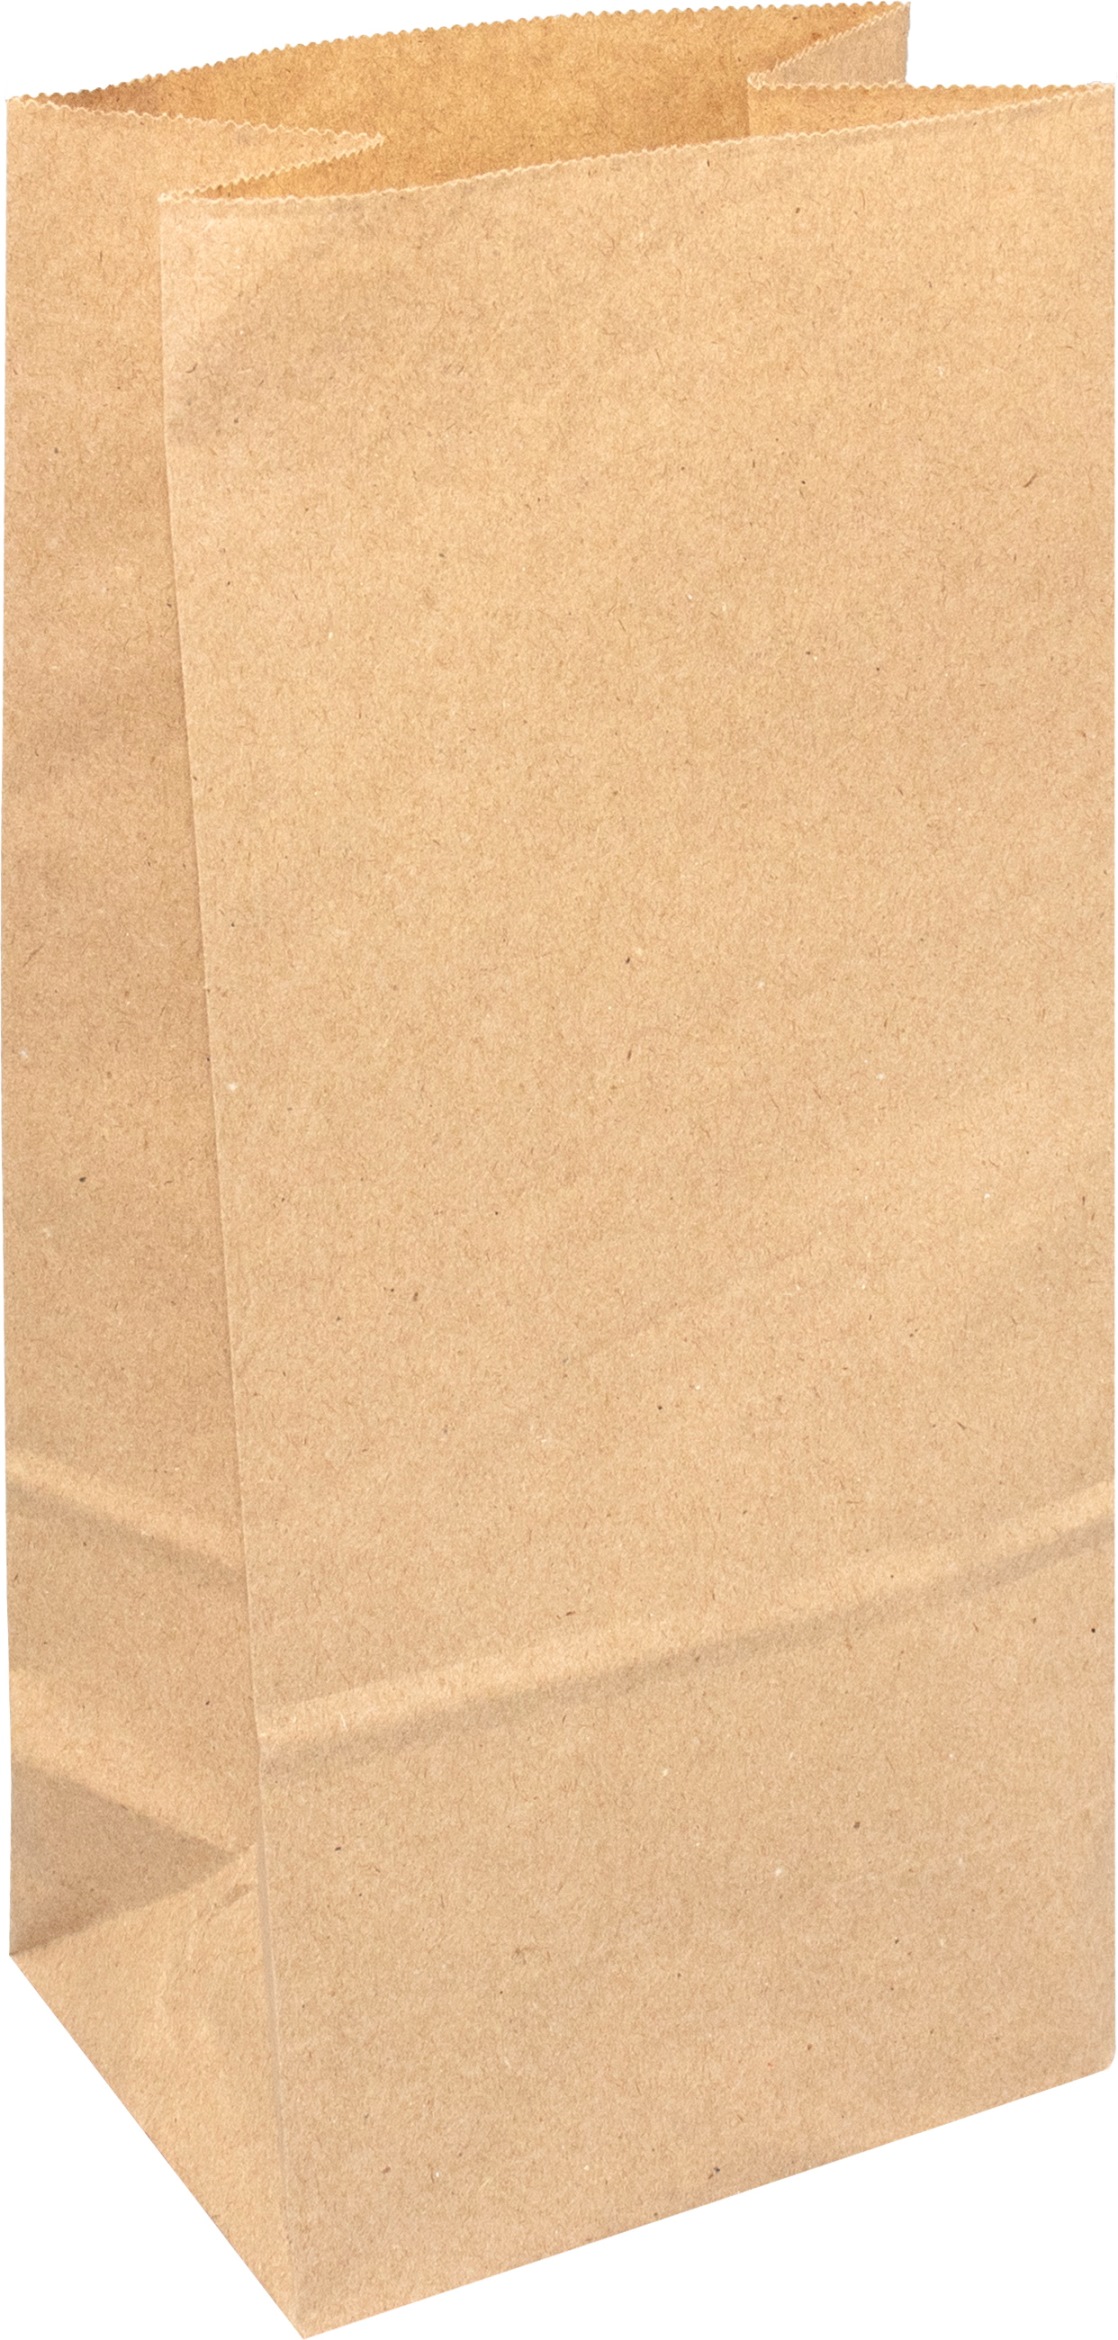 Крафт пакет с прямоугольным дном 80*50*230 мм, 70 г/м